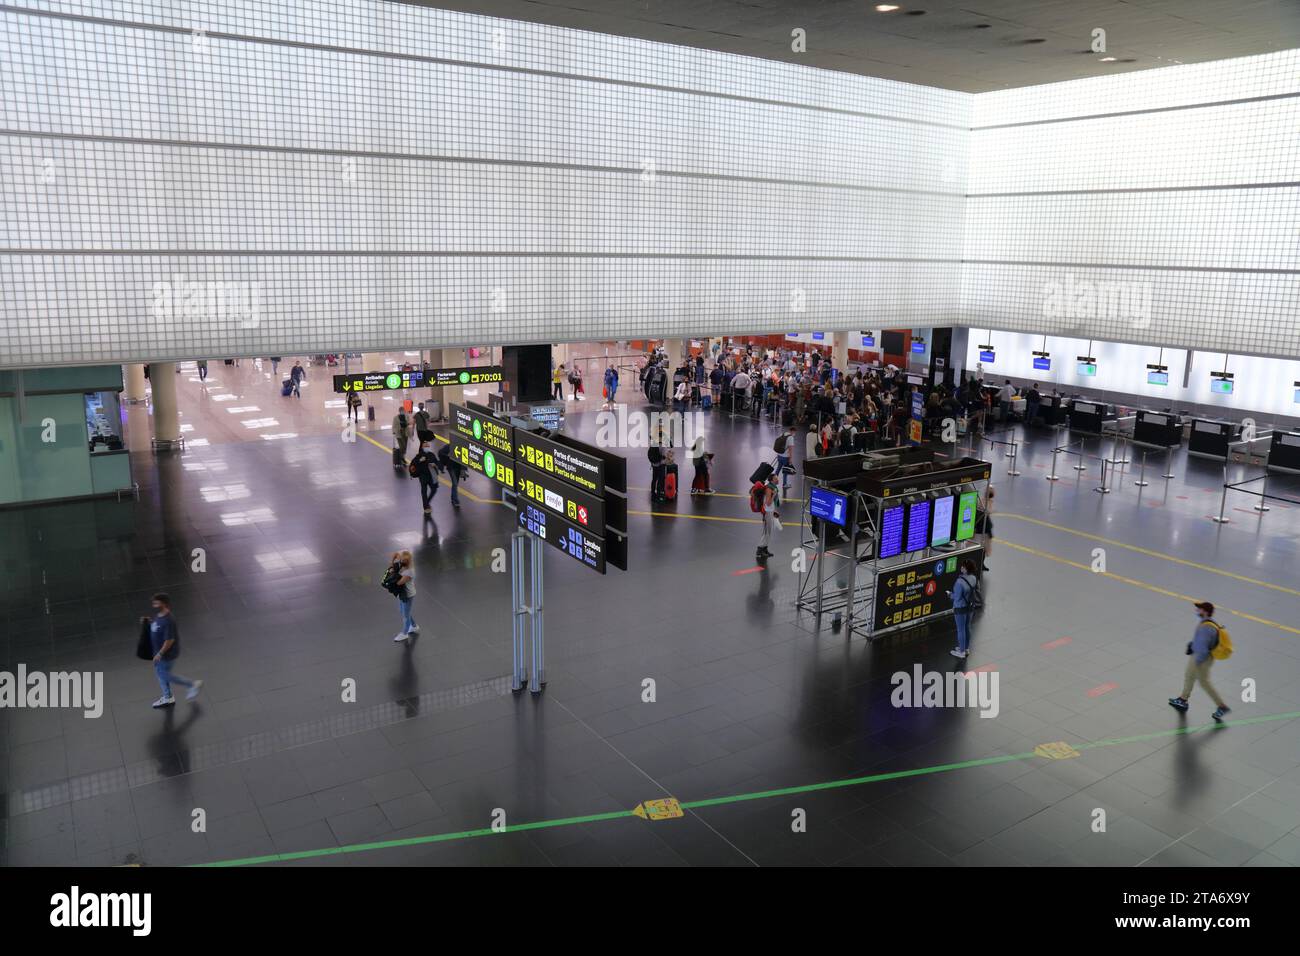 BARCELLONA, SPAGNA - 8 OTTOBRE 2021: Terminal interno dell'aeroporto di Barcellona in Spagna. Barcellona è uno degli aeroporti più trafficati della Spagna e dell'Europa. Foto Stock